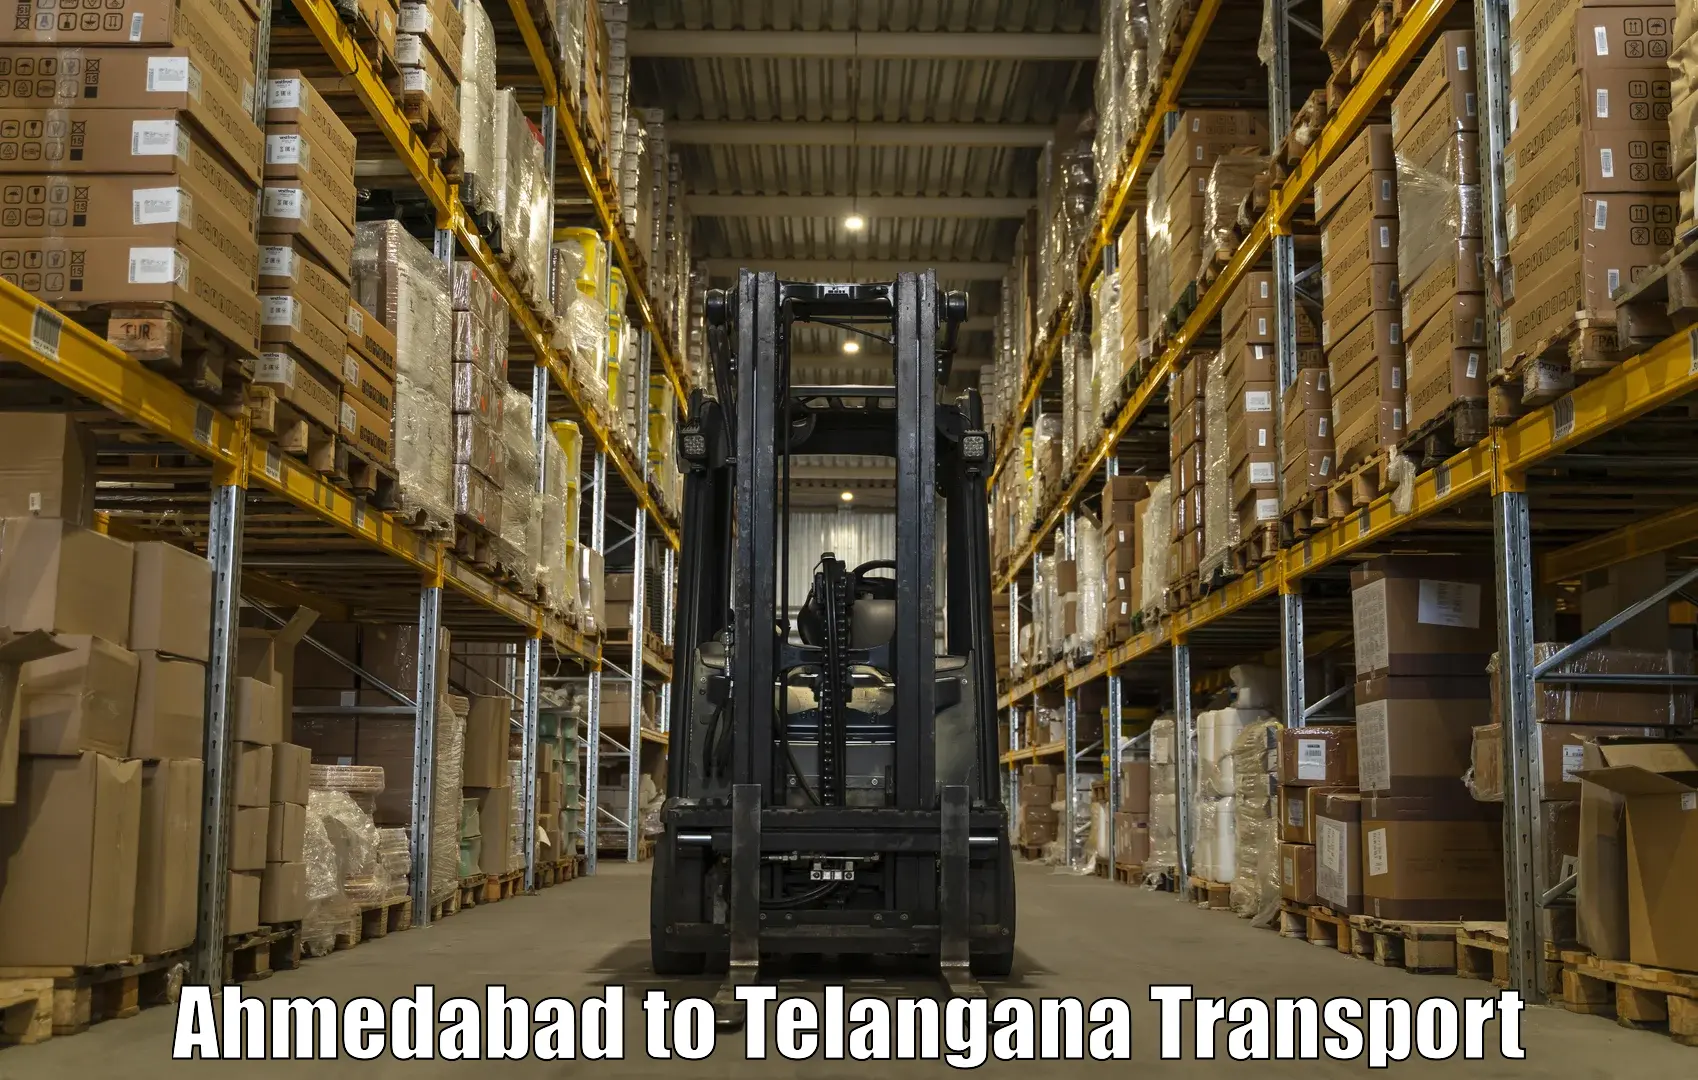 All India transport service Ahmedabad to Wanaparthy